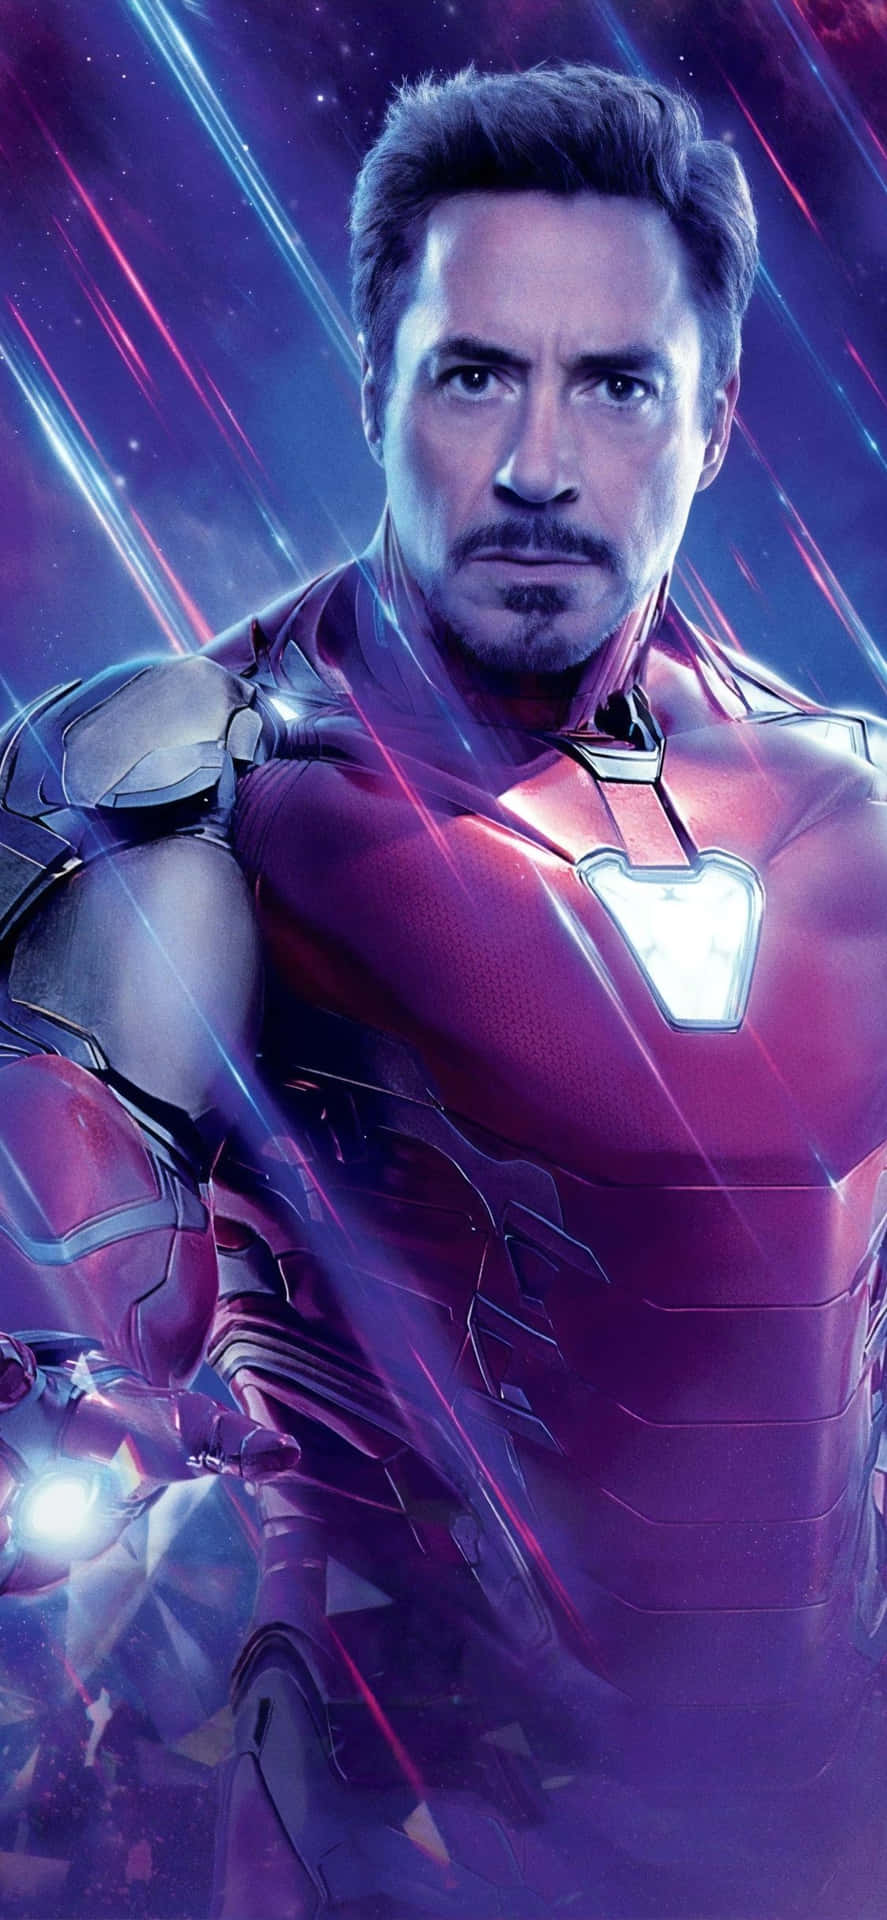 Rendiunico Il Tuo Stile Di Supereroe Con L'iconica Immagine Di Iron Man Di Tony Stark Per L'iphone X. Sfondo